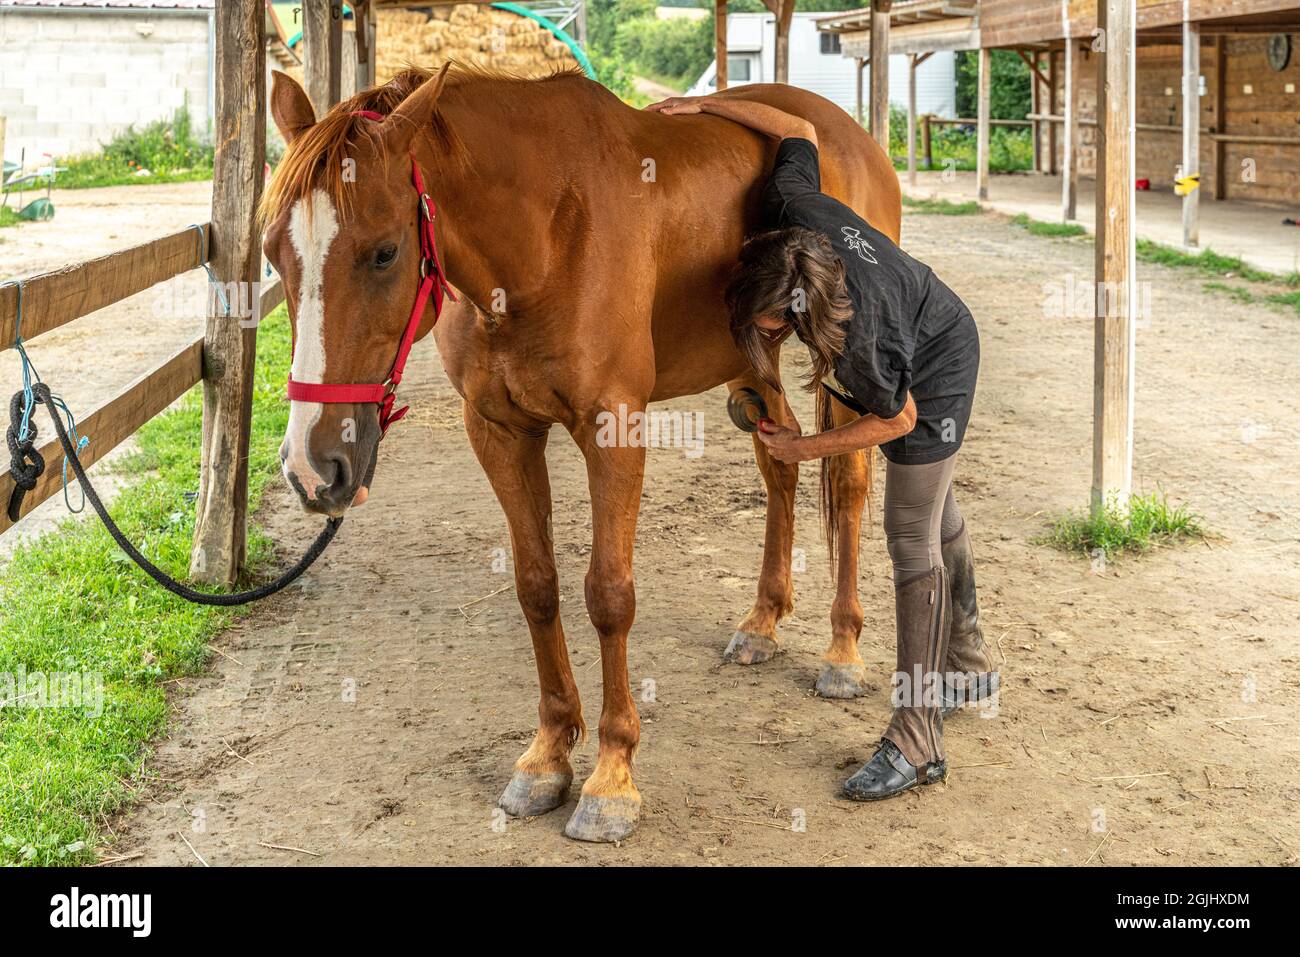 Die Reiterin kümmert sich um sie, indem sie das Fell und die Hufe putzt, putzt und putzt. Lyon, Frankreich, Europa Stockfoto